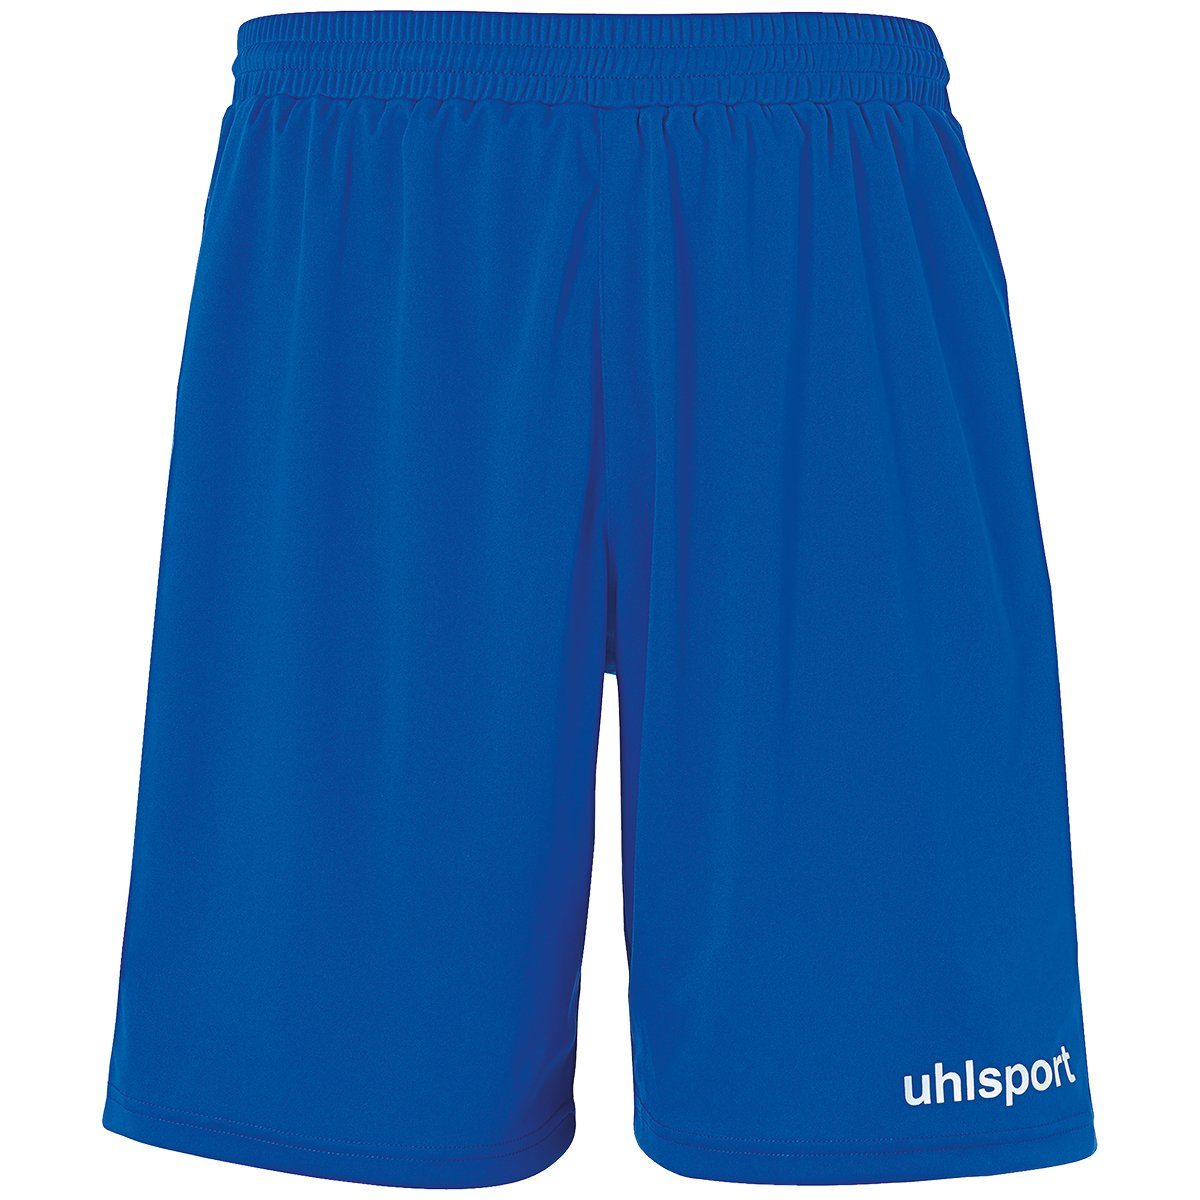 uhlsport Shorts uhlsport SHORTS PERFORMANCE azurblau/weiß Shorts